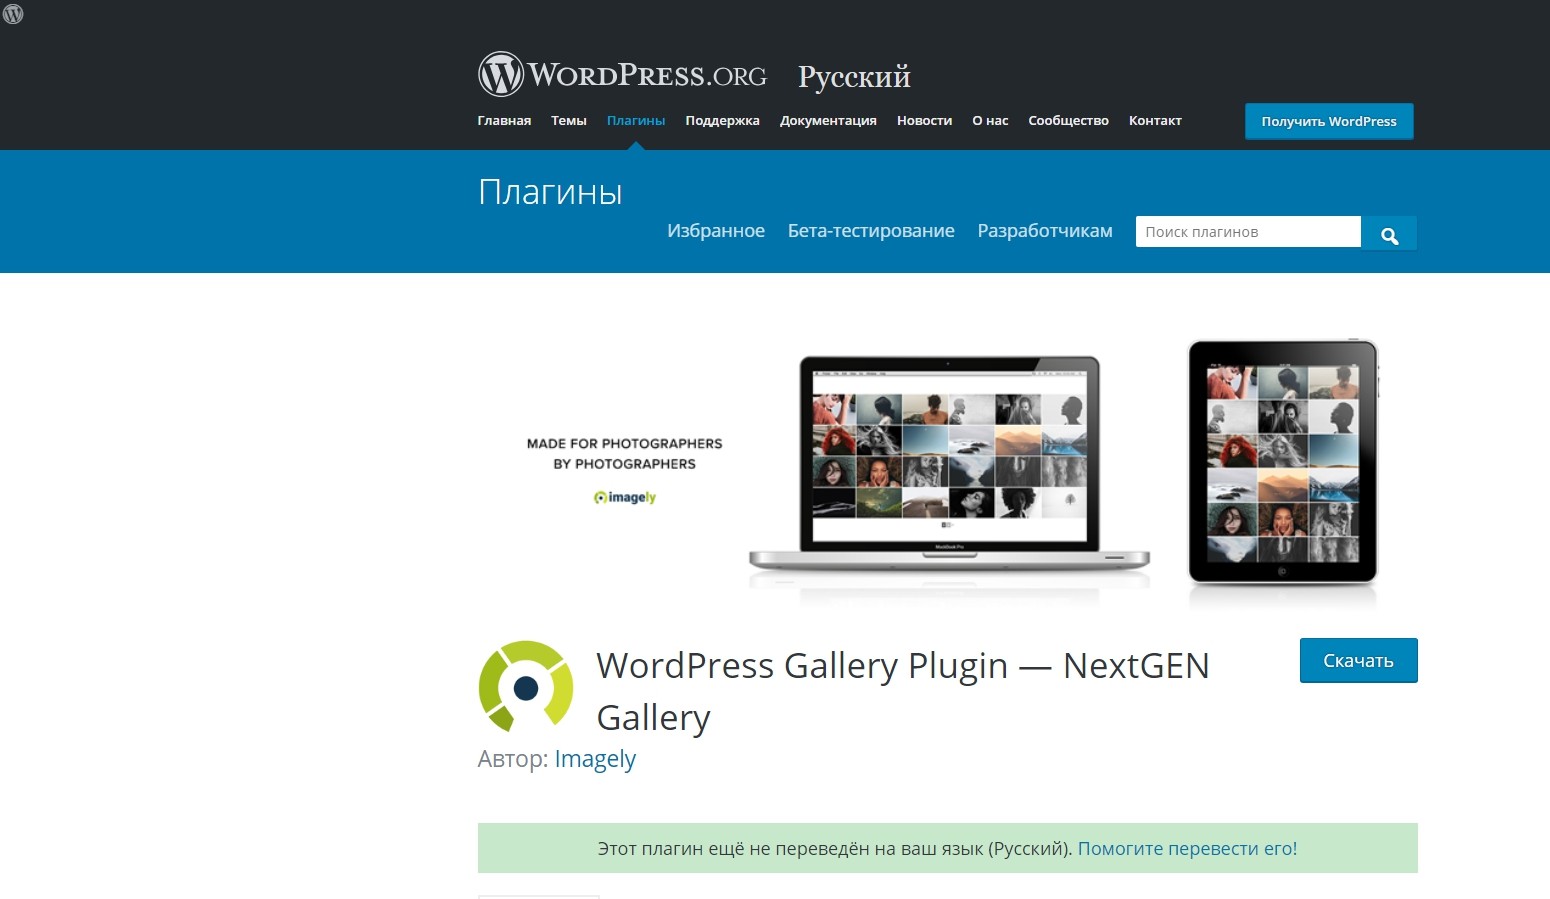 WordPress Gallery Plugin — NextGEN Gallery